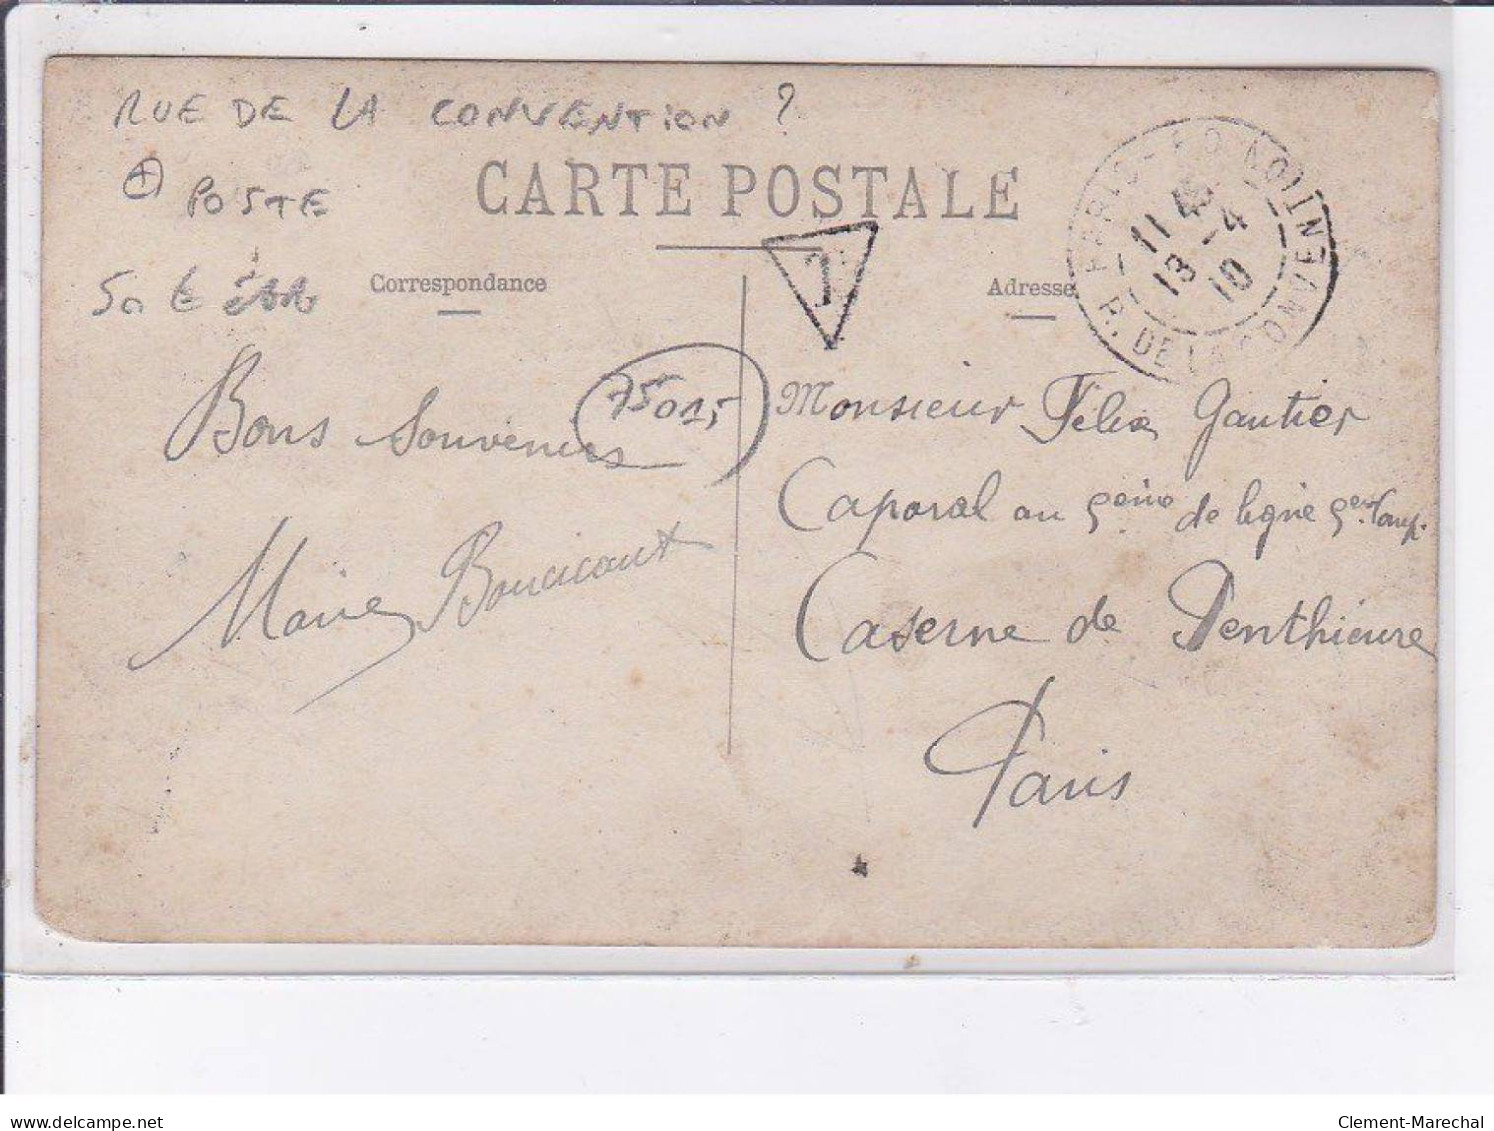 PARIS: 75015, Rue De La Convention(?) Poste, Poste Télégraphe - état - Paris (15)